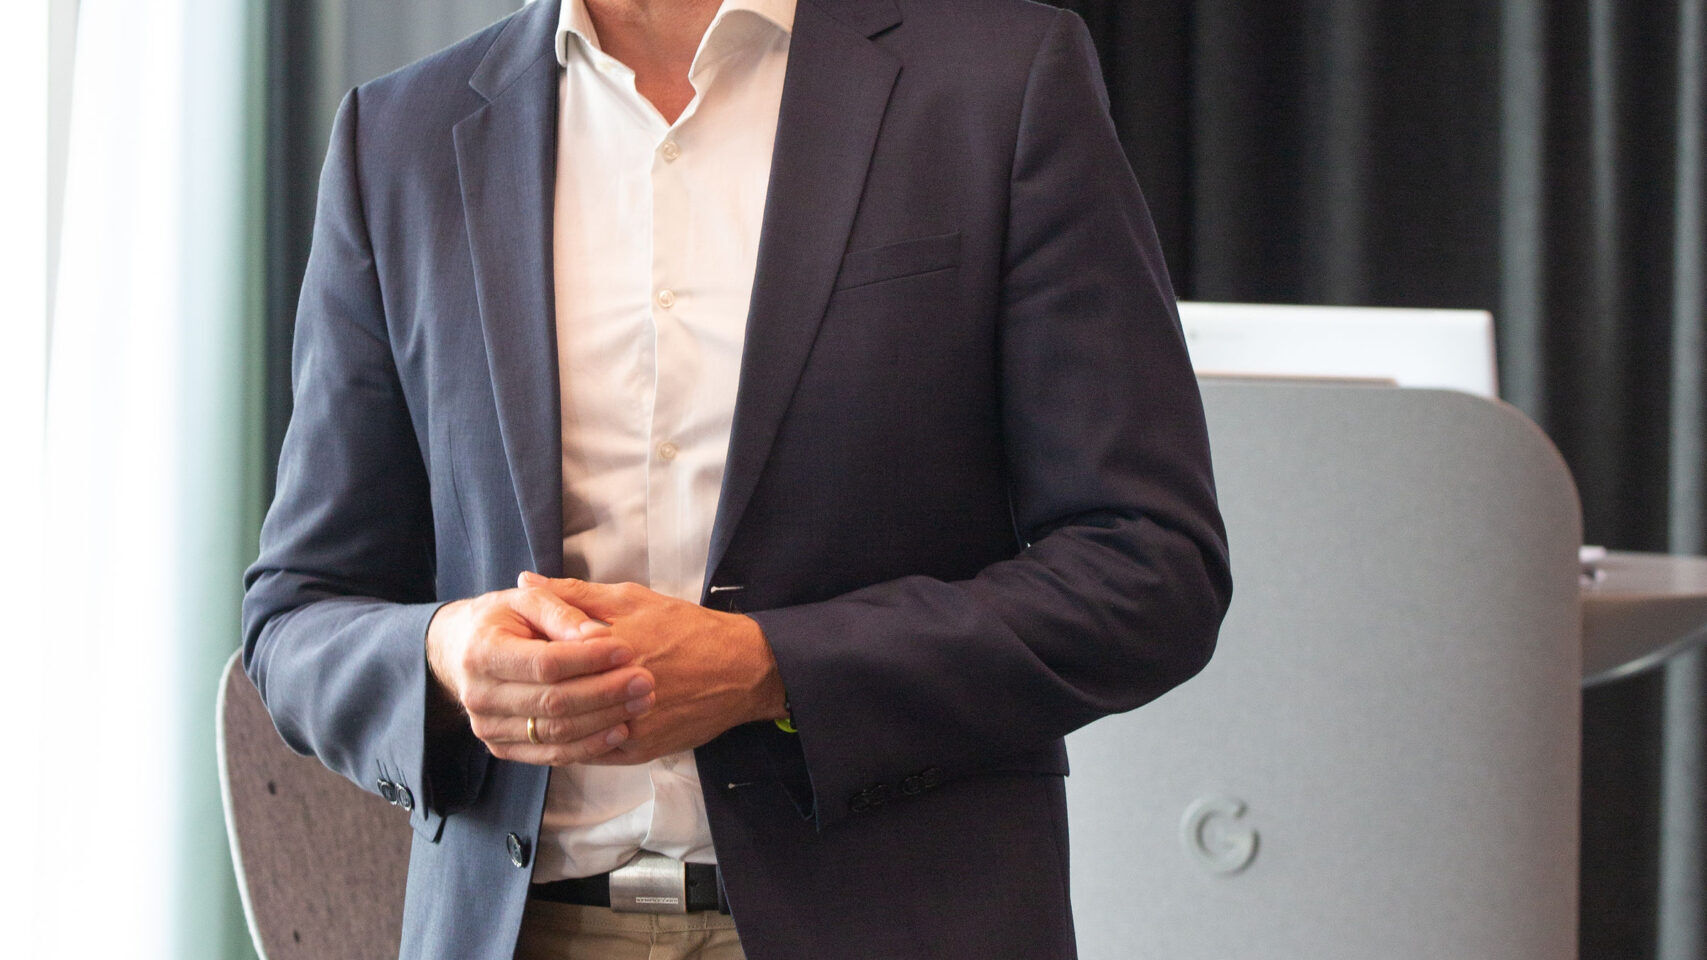 آندریاس بریز، مدیر کشور YouTube آلمان و مدیر منطقه ای اروپای مرکزی، در افتتاحیه رسمی پردیس جدید Google Europaallee در زوریخ در 27 ژوئن 2022 شرکت کردند.